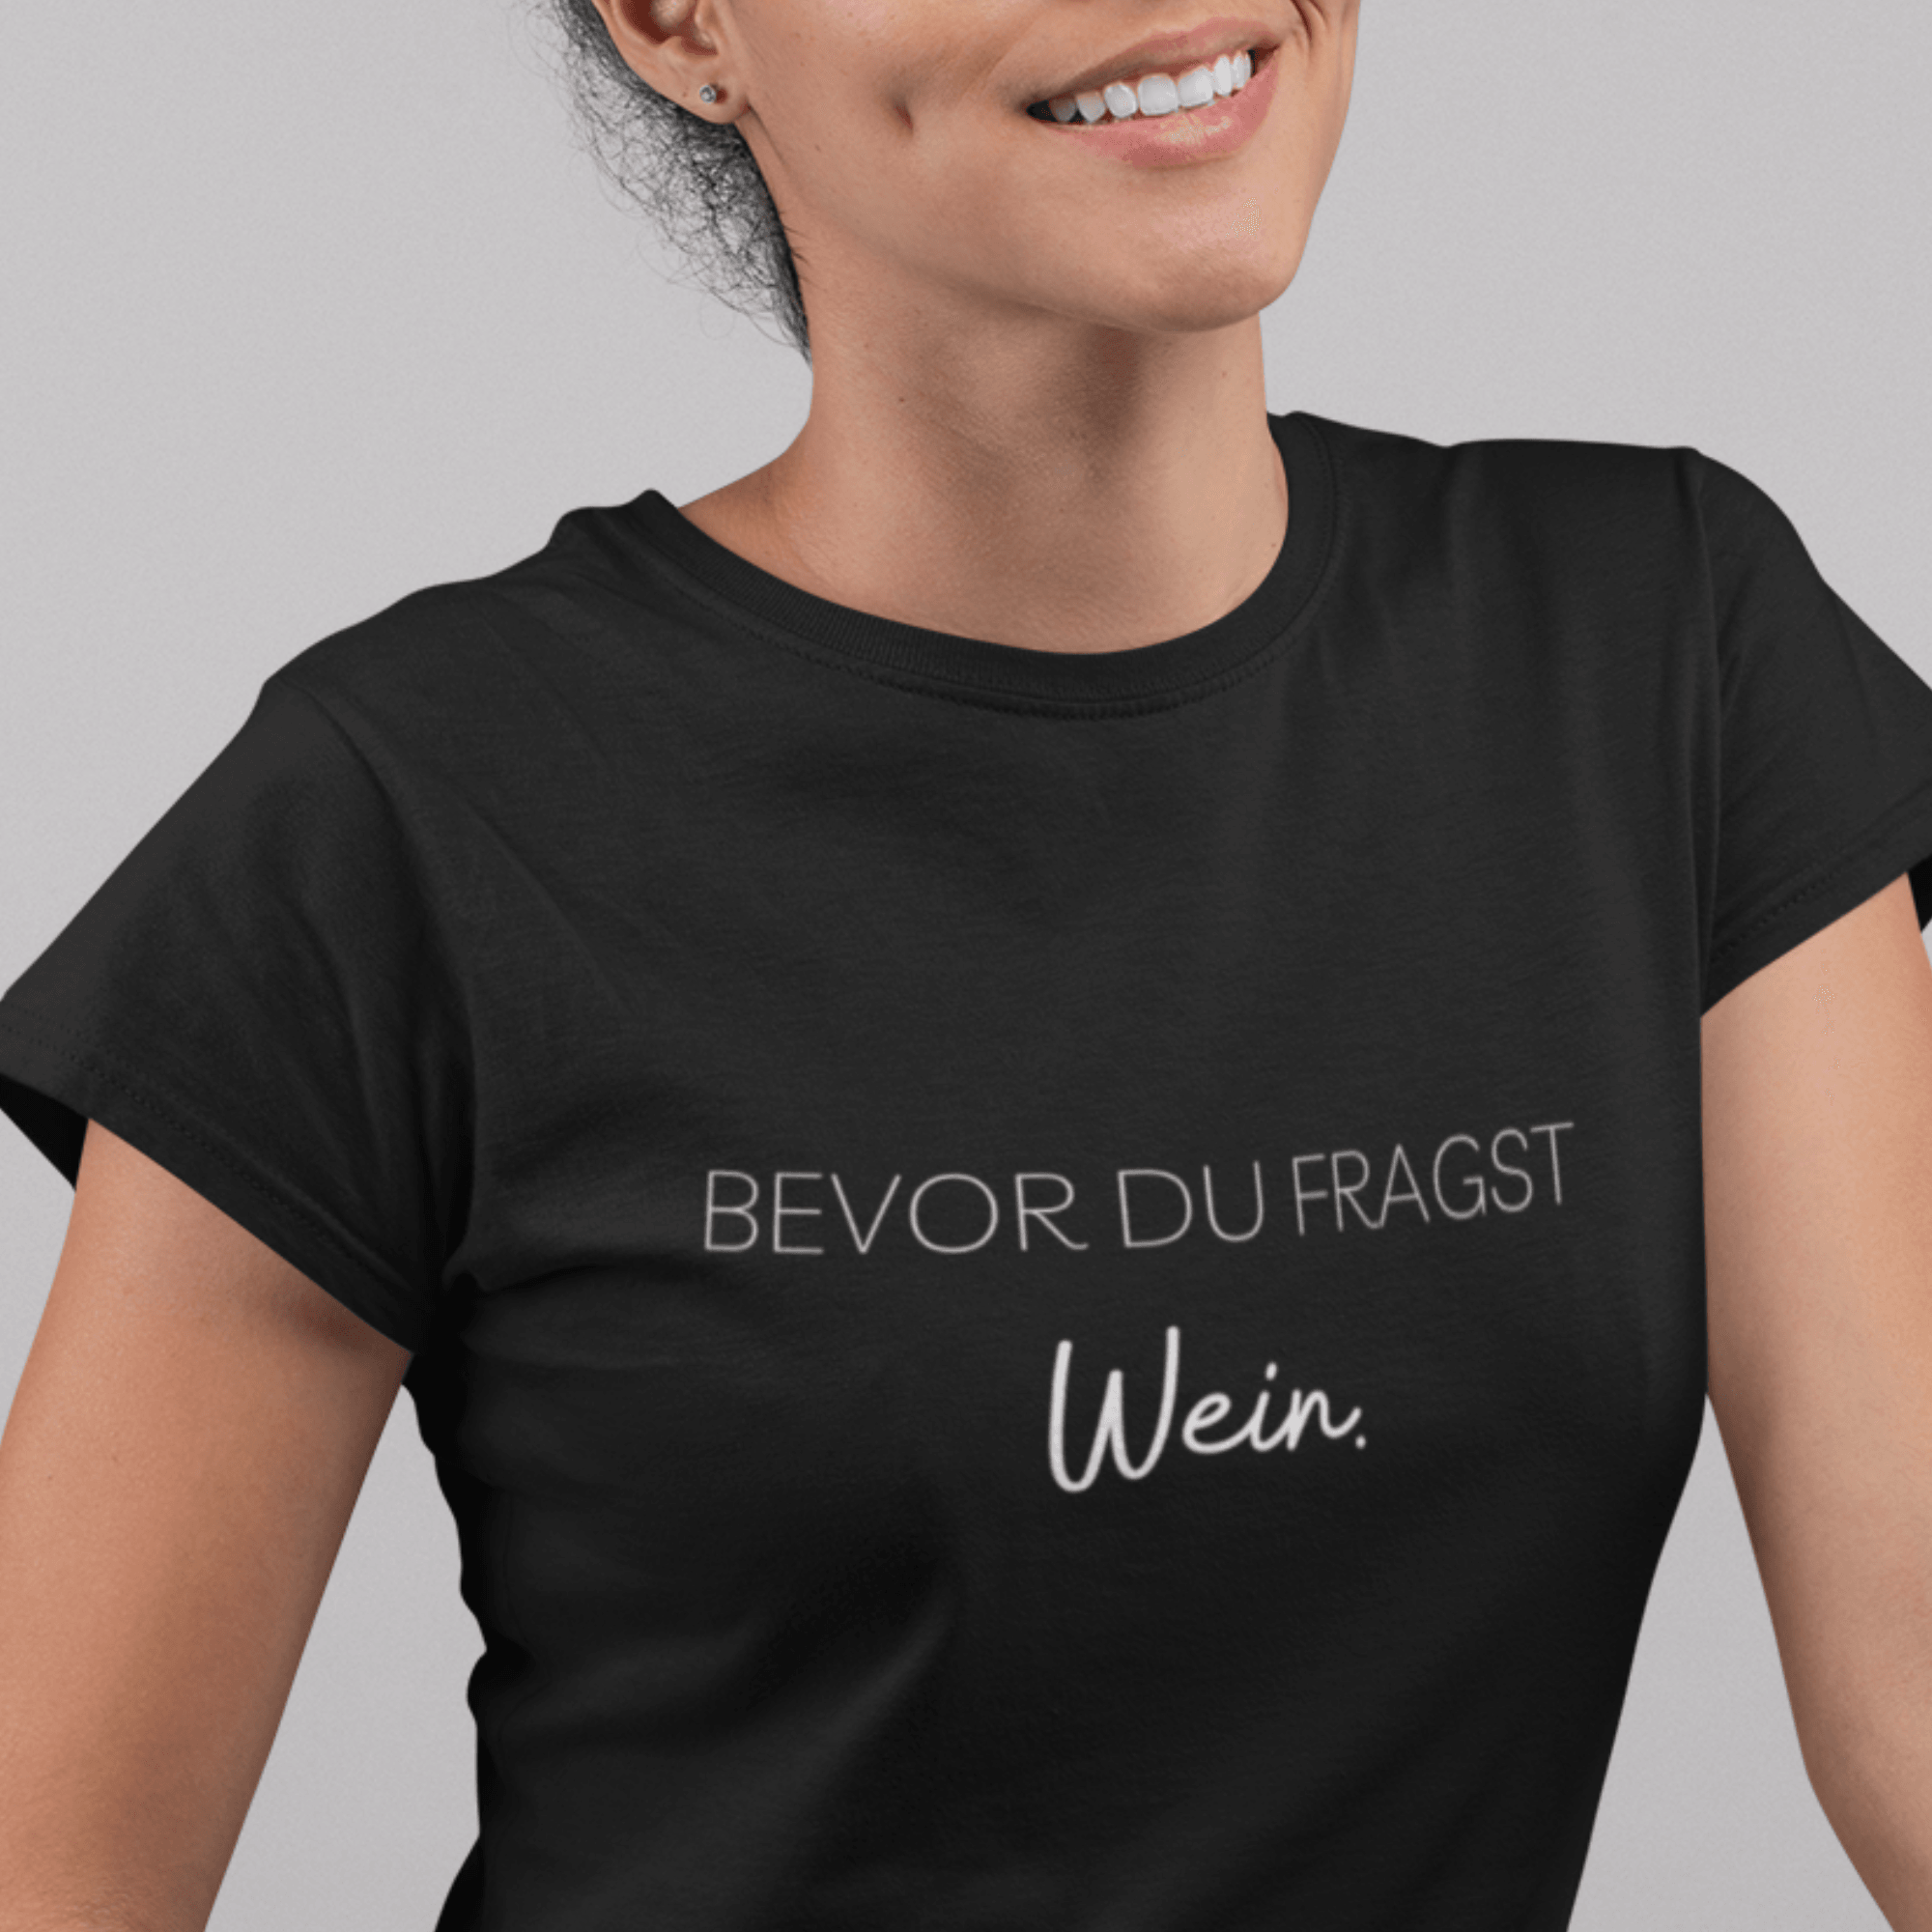 BEVOR DU FRAGST WEIN - Damen Premiumshirt - einschenken24.de